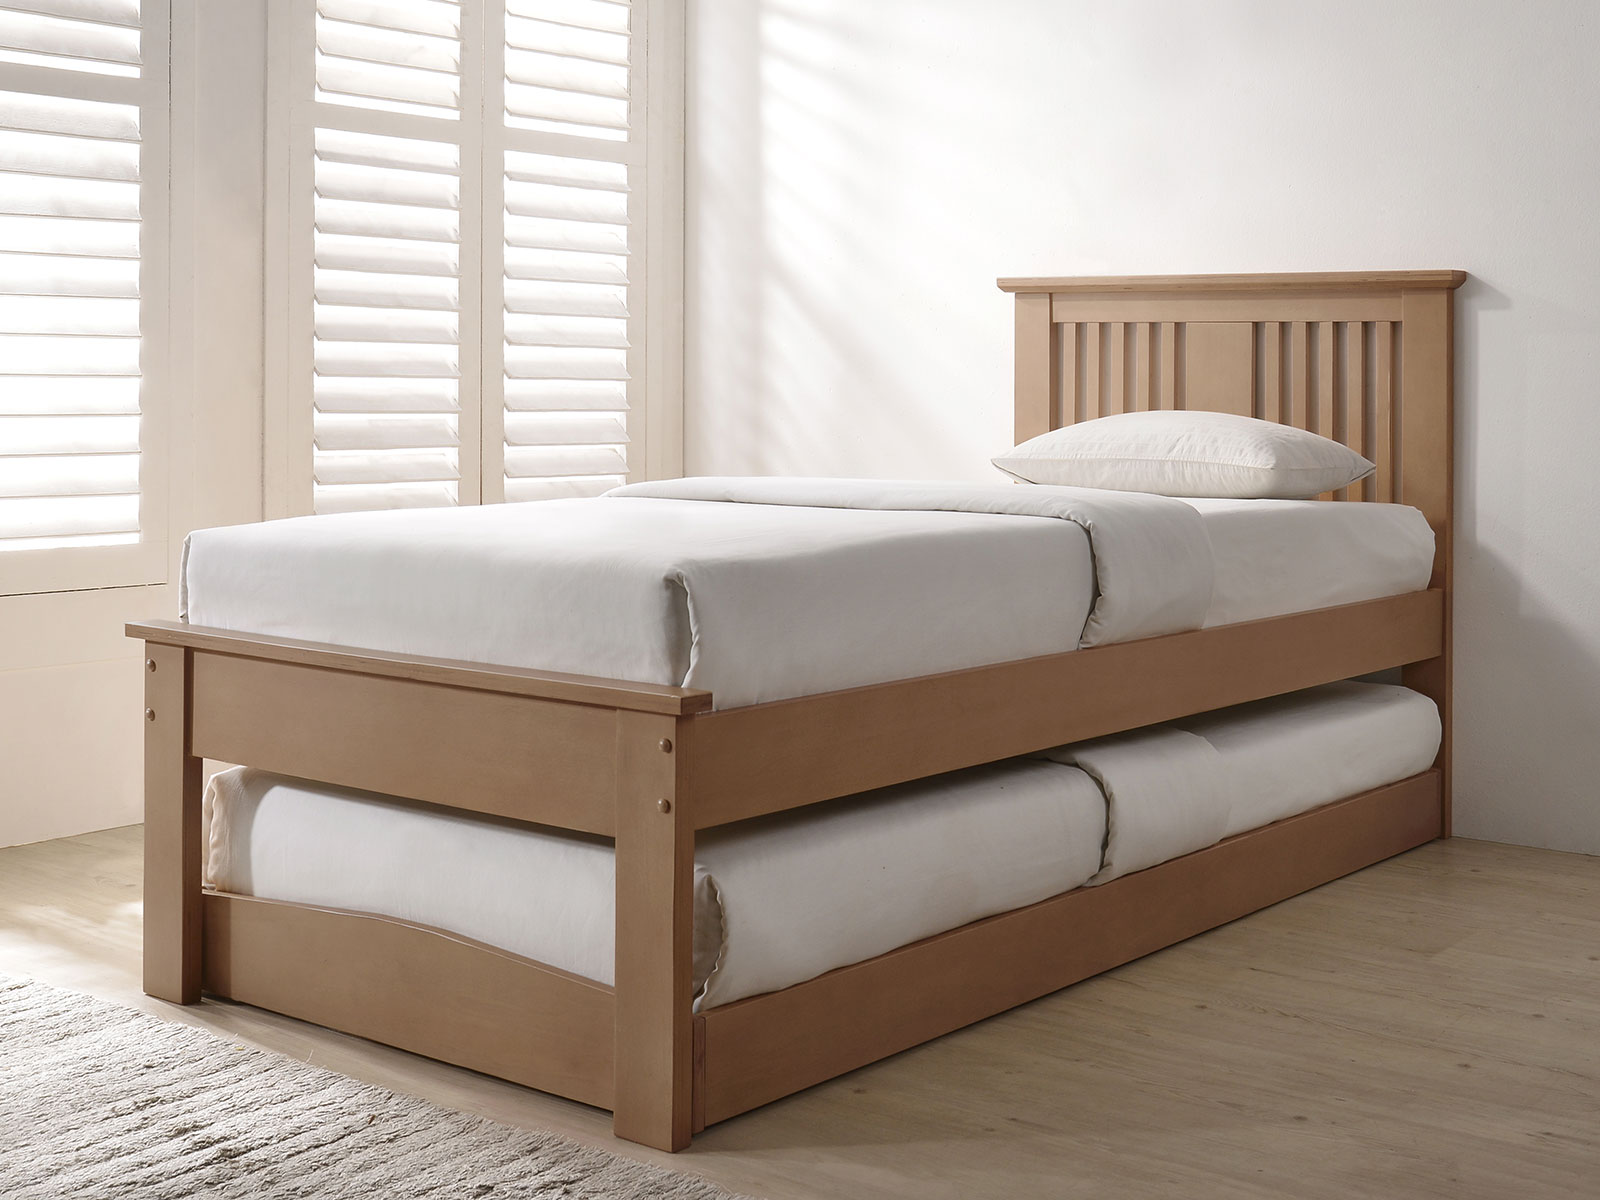 Flintshire Furniture Halkyn Wooden Guest Bed